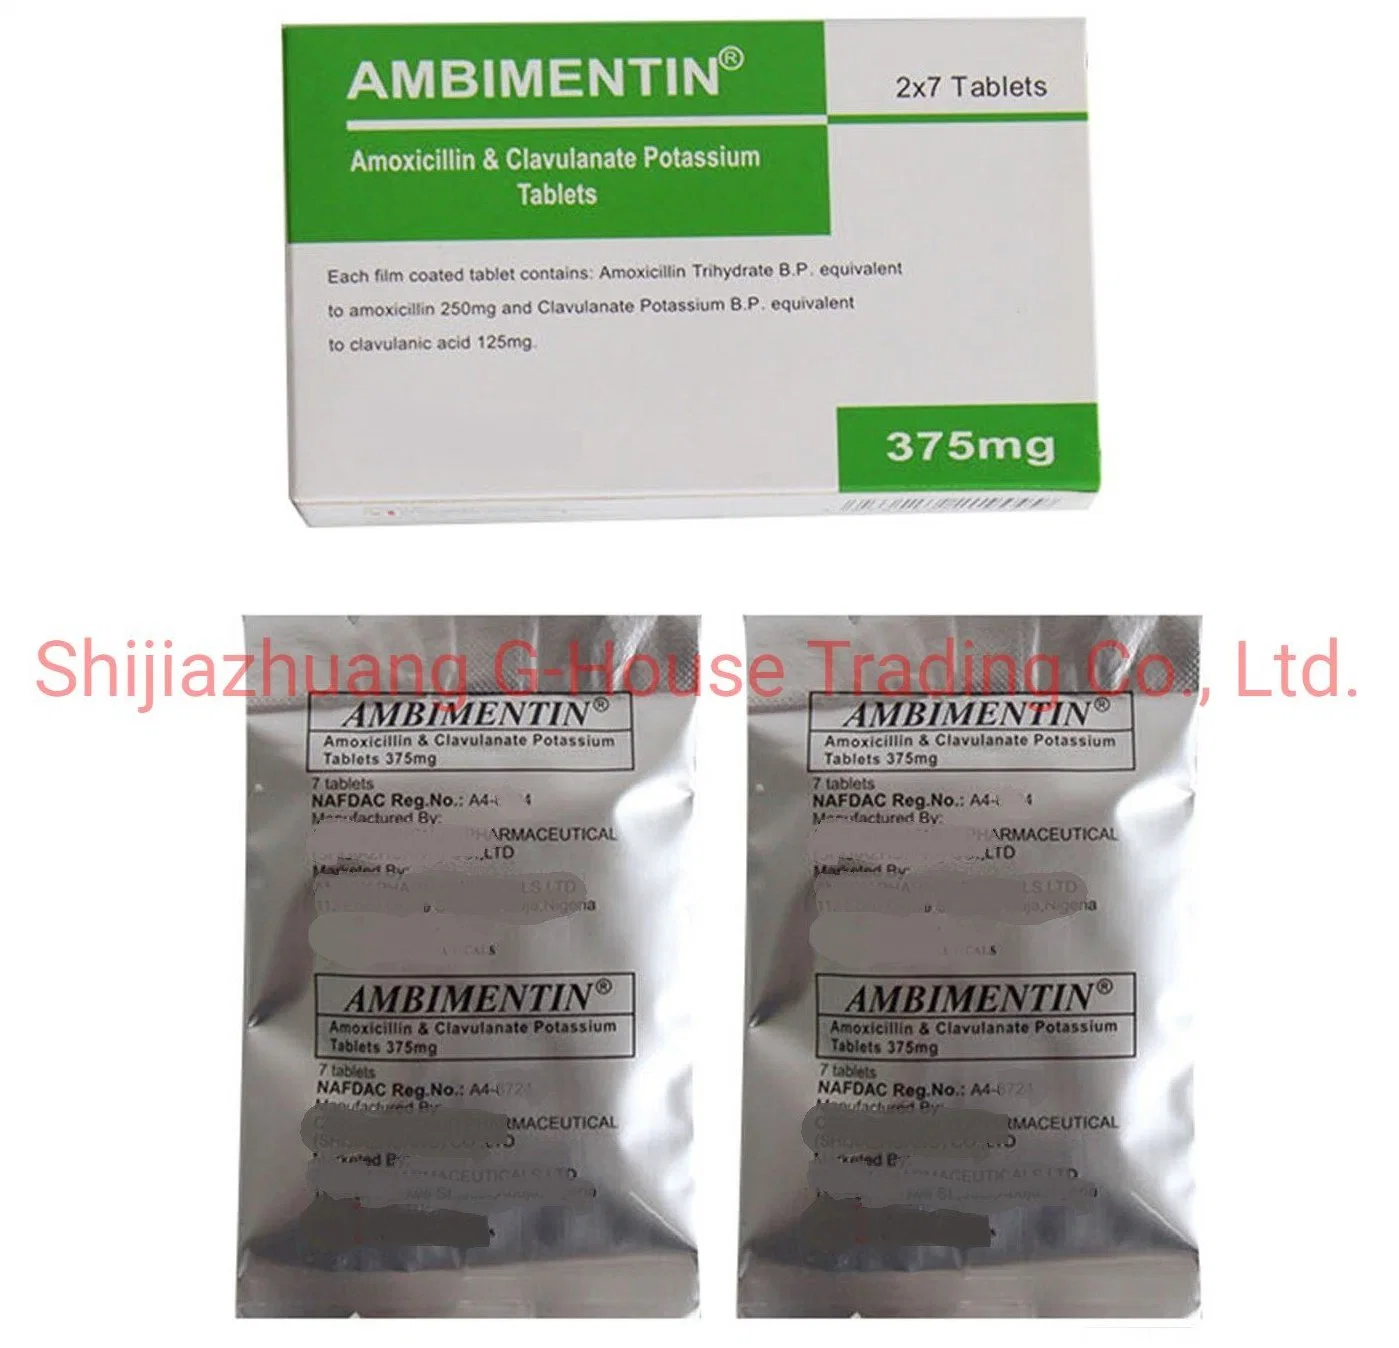 La amoxicilina y clavulanato de potasio tabletas medicamento terminado drogas farmacéuticos